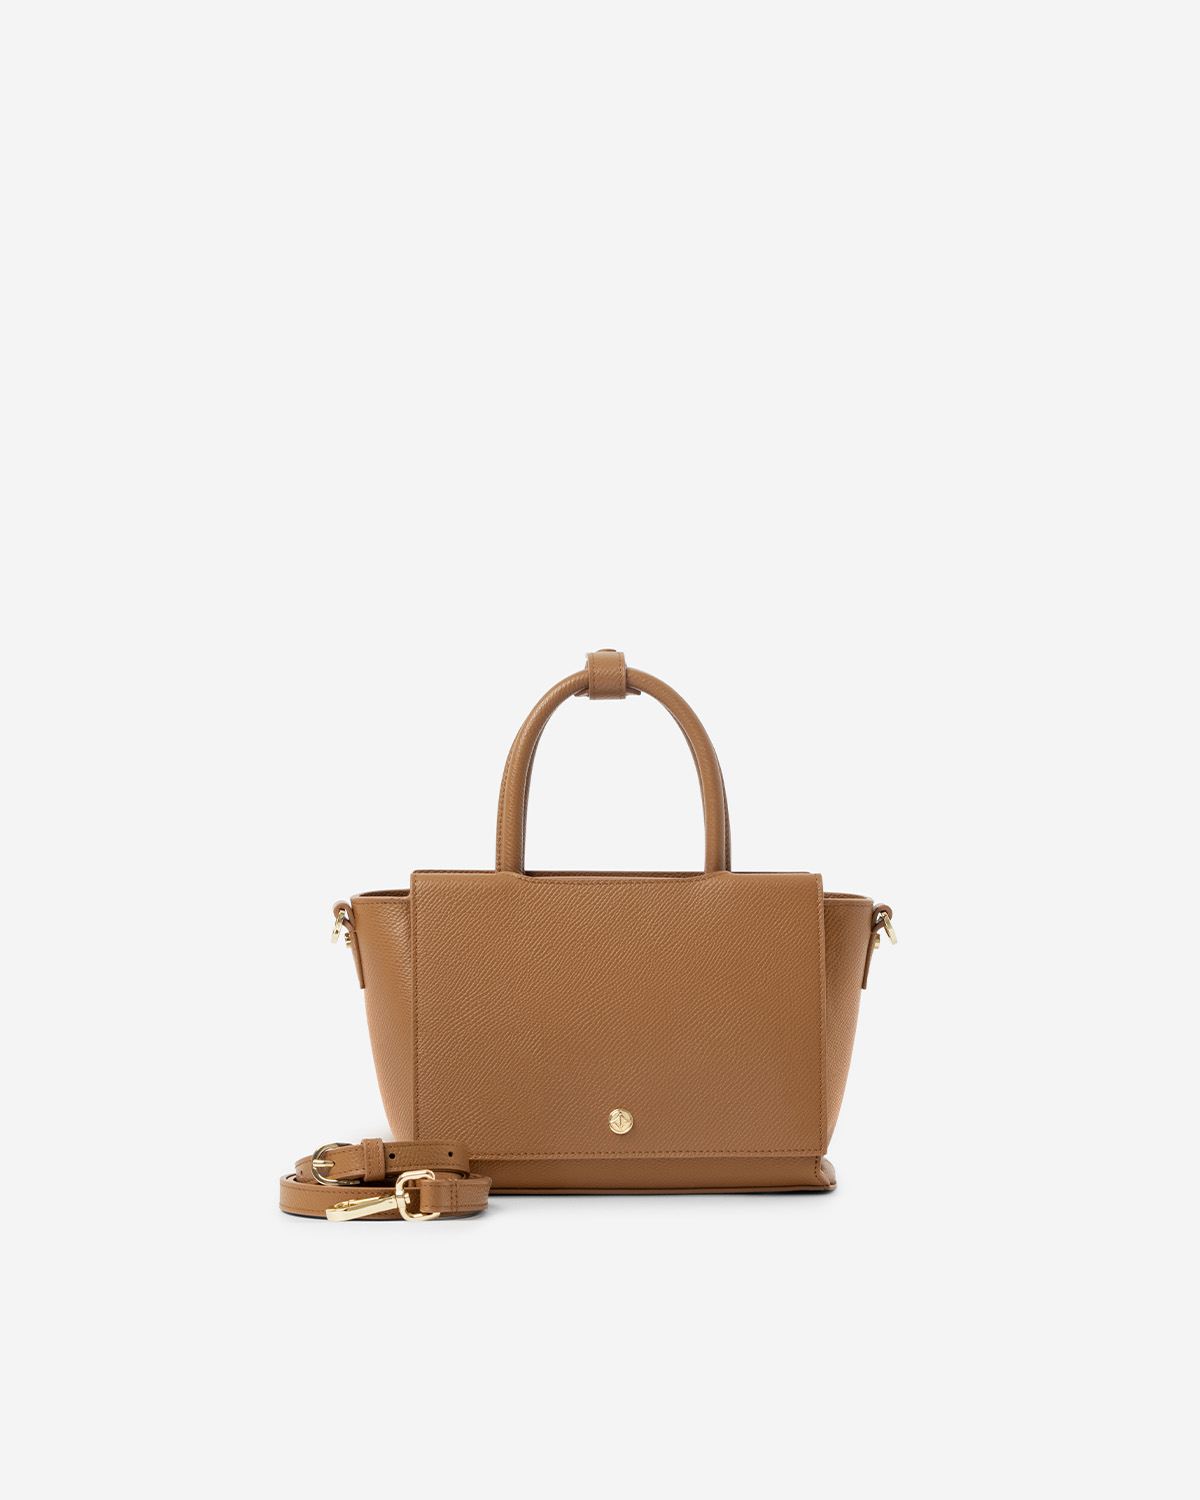 กระเป๋าถือหนังแท้ VERA Heidi Leather Handbag, ไซส์ 22 สี Camel